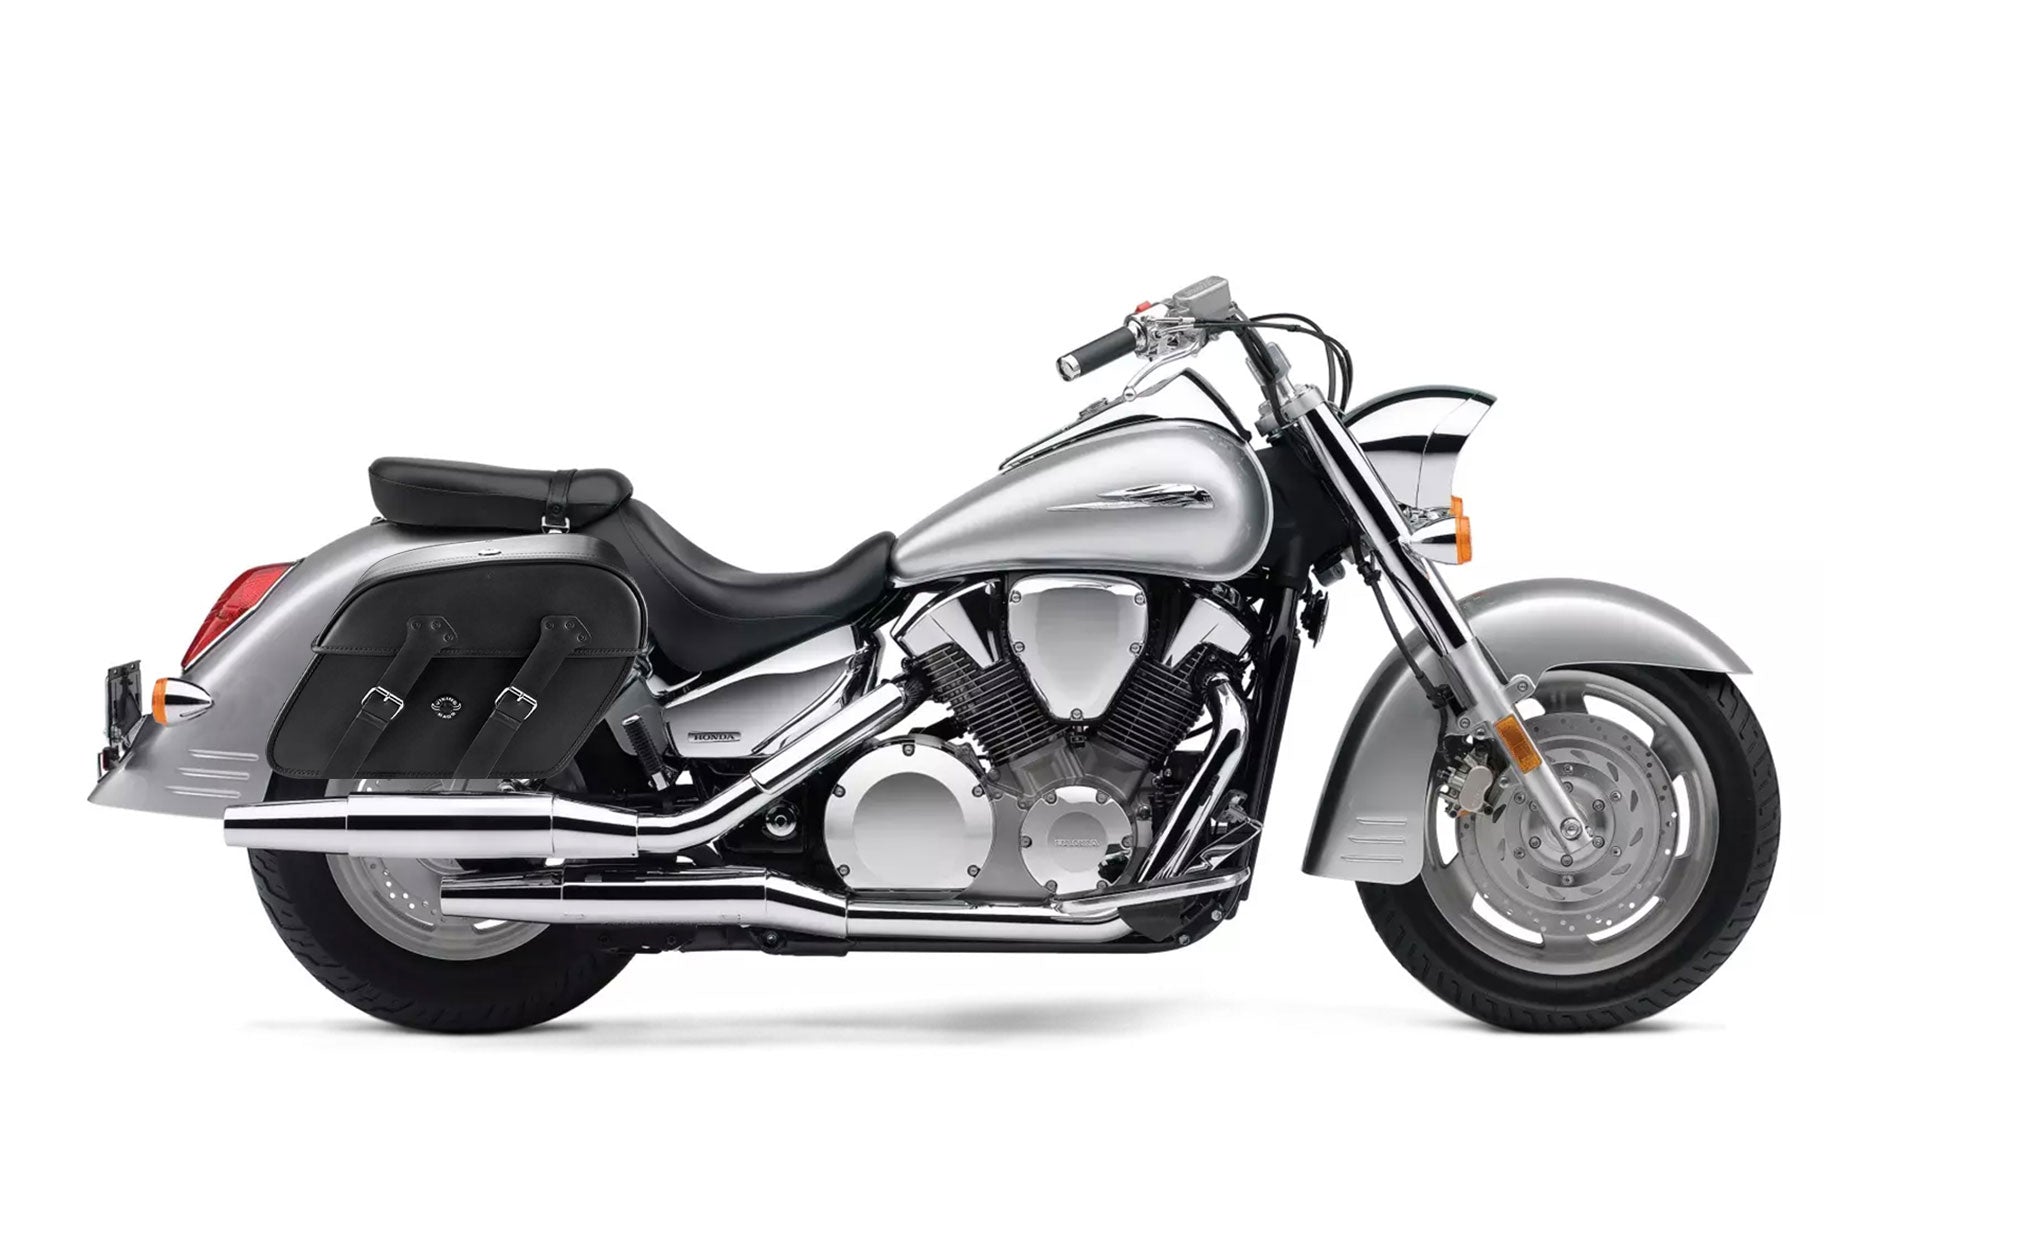 Viking Raven Extra Large Honda Vtx 1300 S Shock Cut Out Leather Motorcycle Saddlebags on Bike Photo @expand